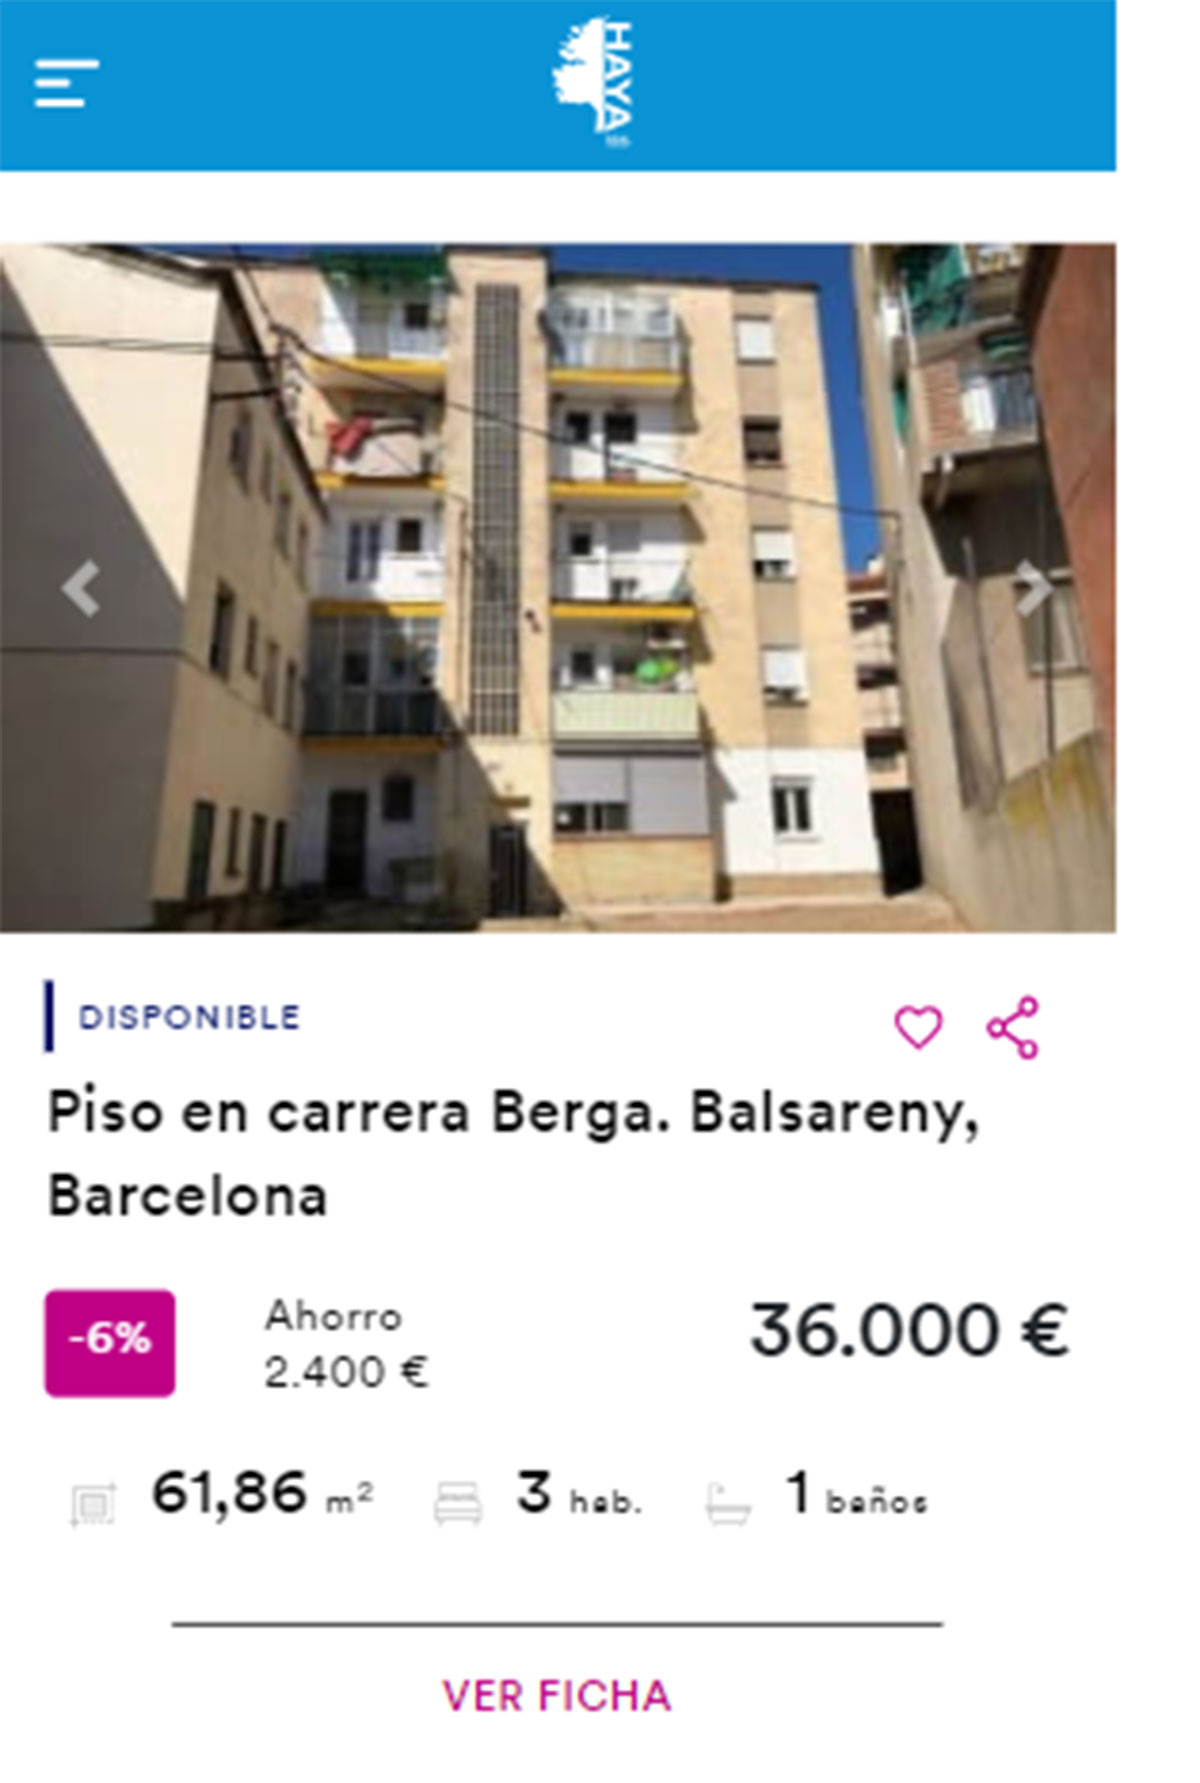 Piso en Barcelona por 36.000 euros